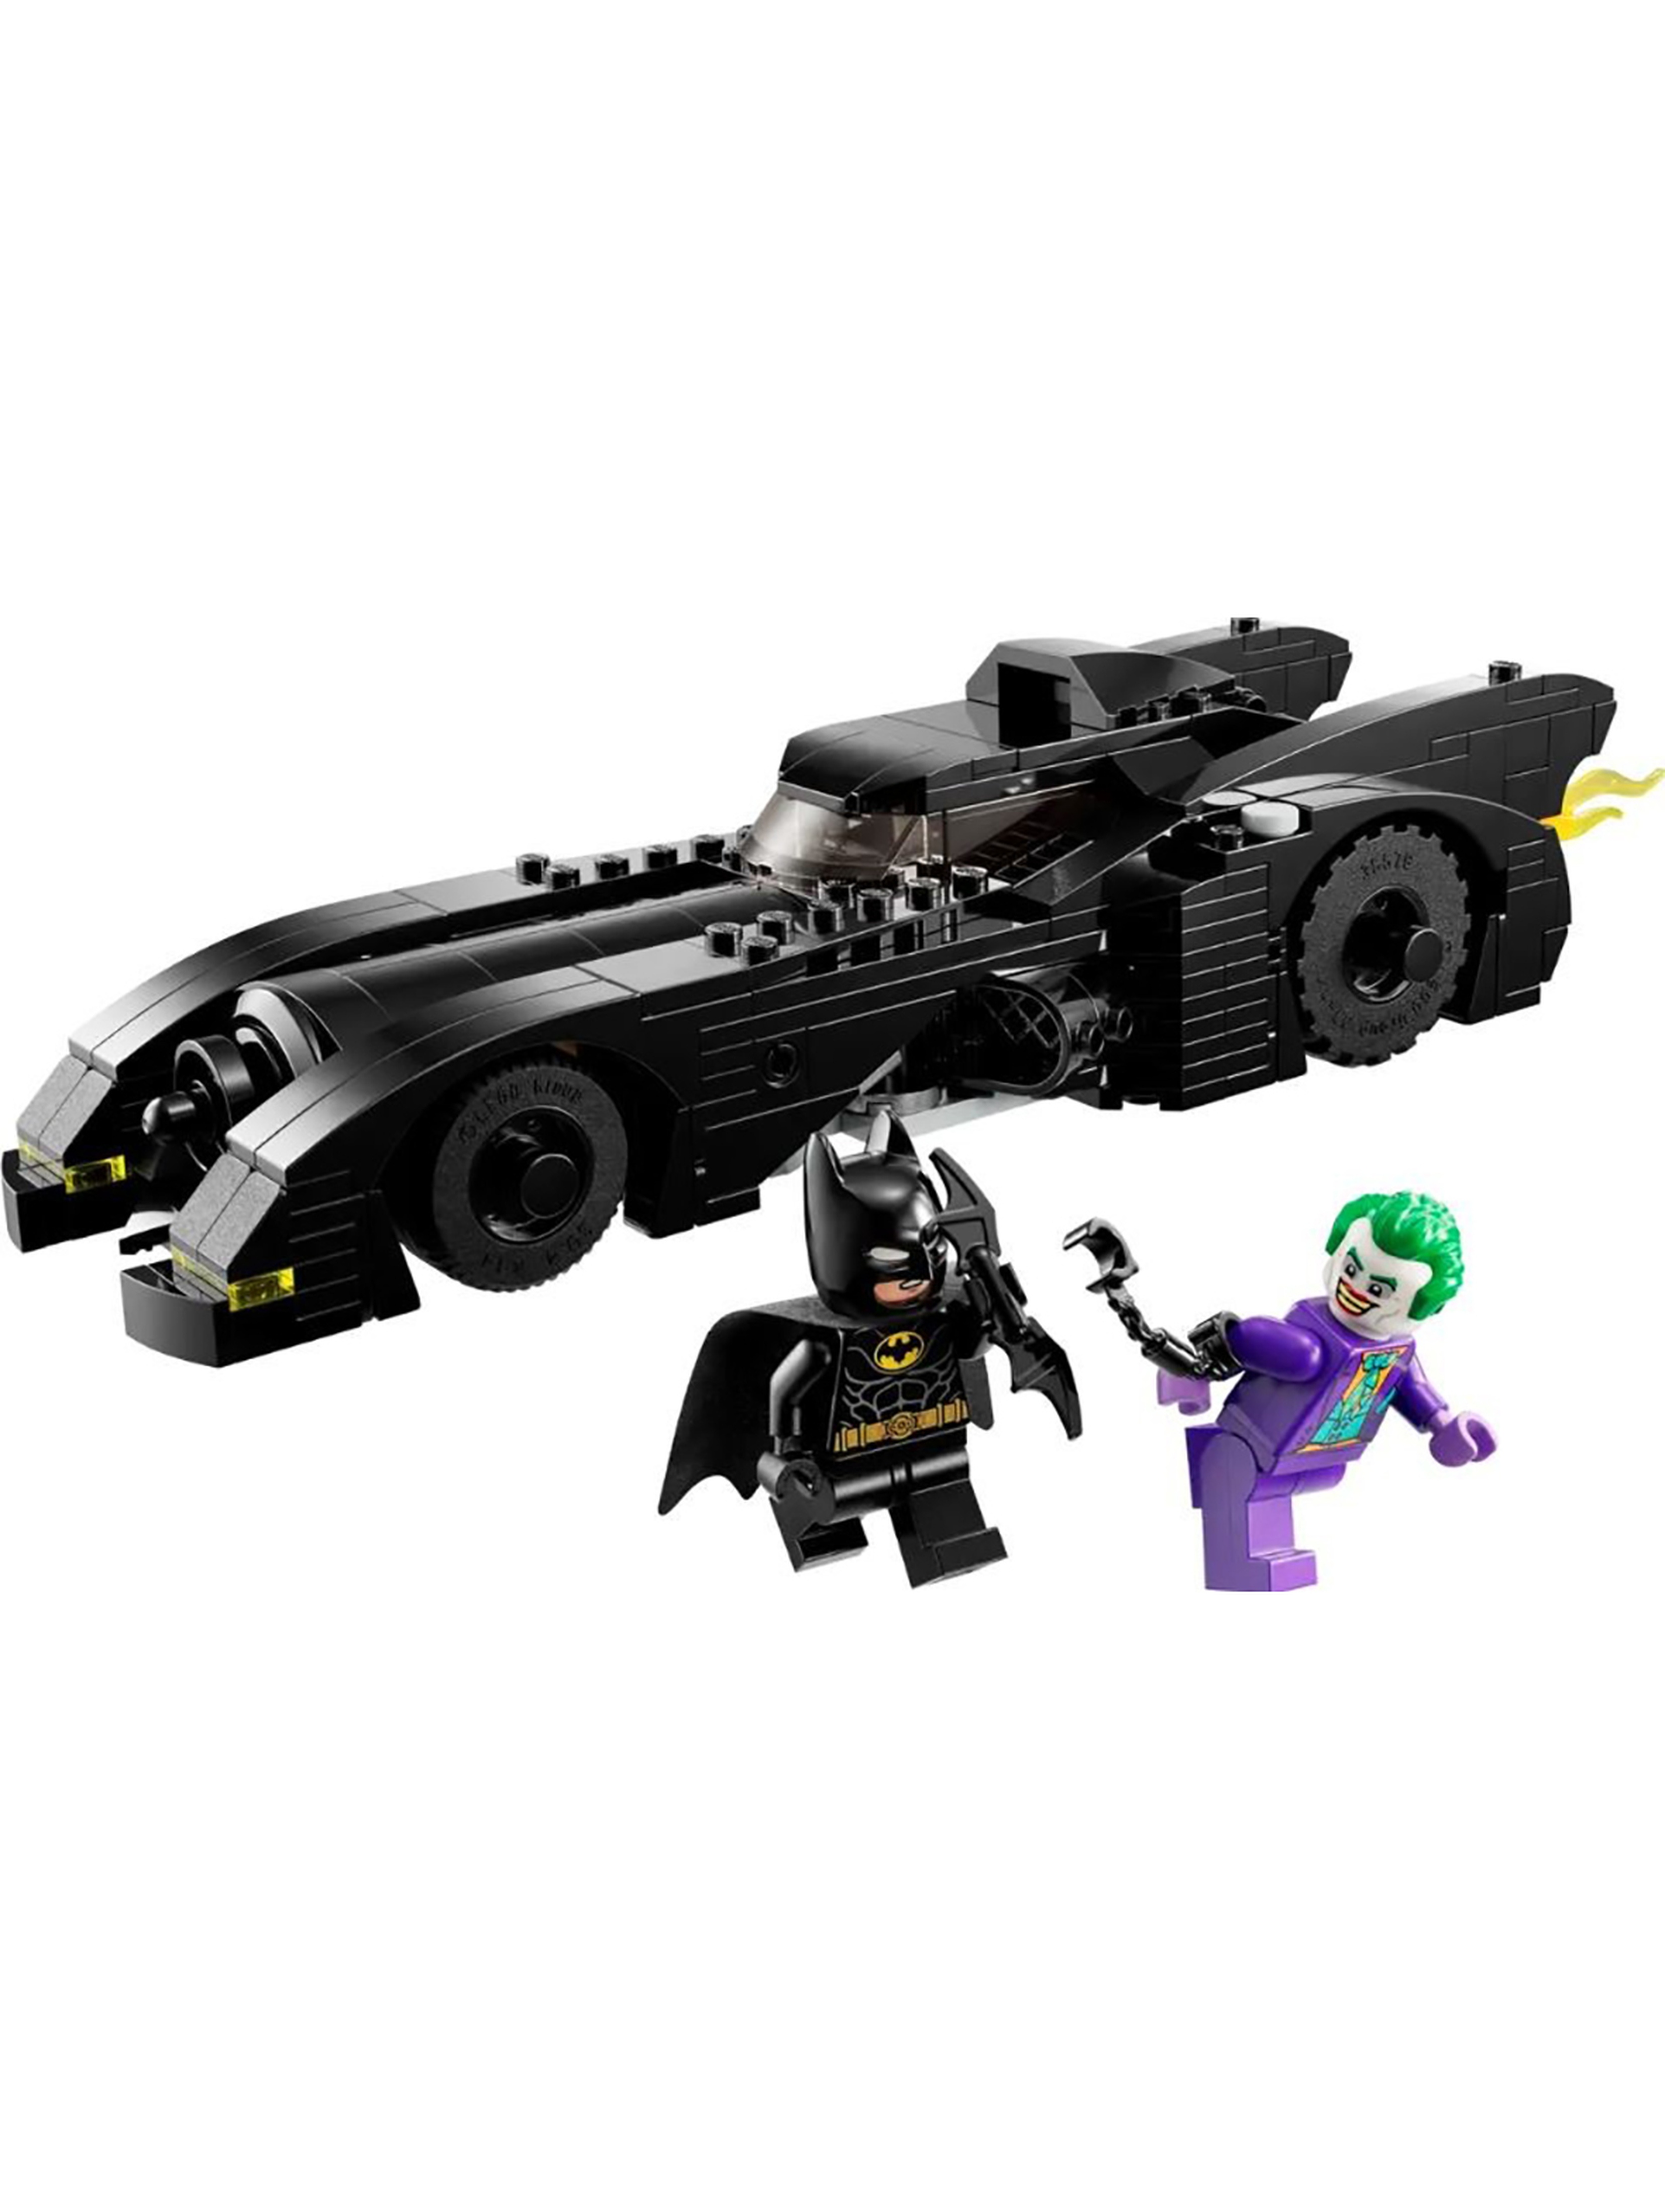 Klocki LEGO Super Heroes 76224 Batmobil: Pościg Batmana - 438 elementów, wiekm8 +